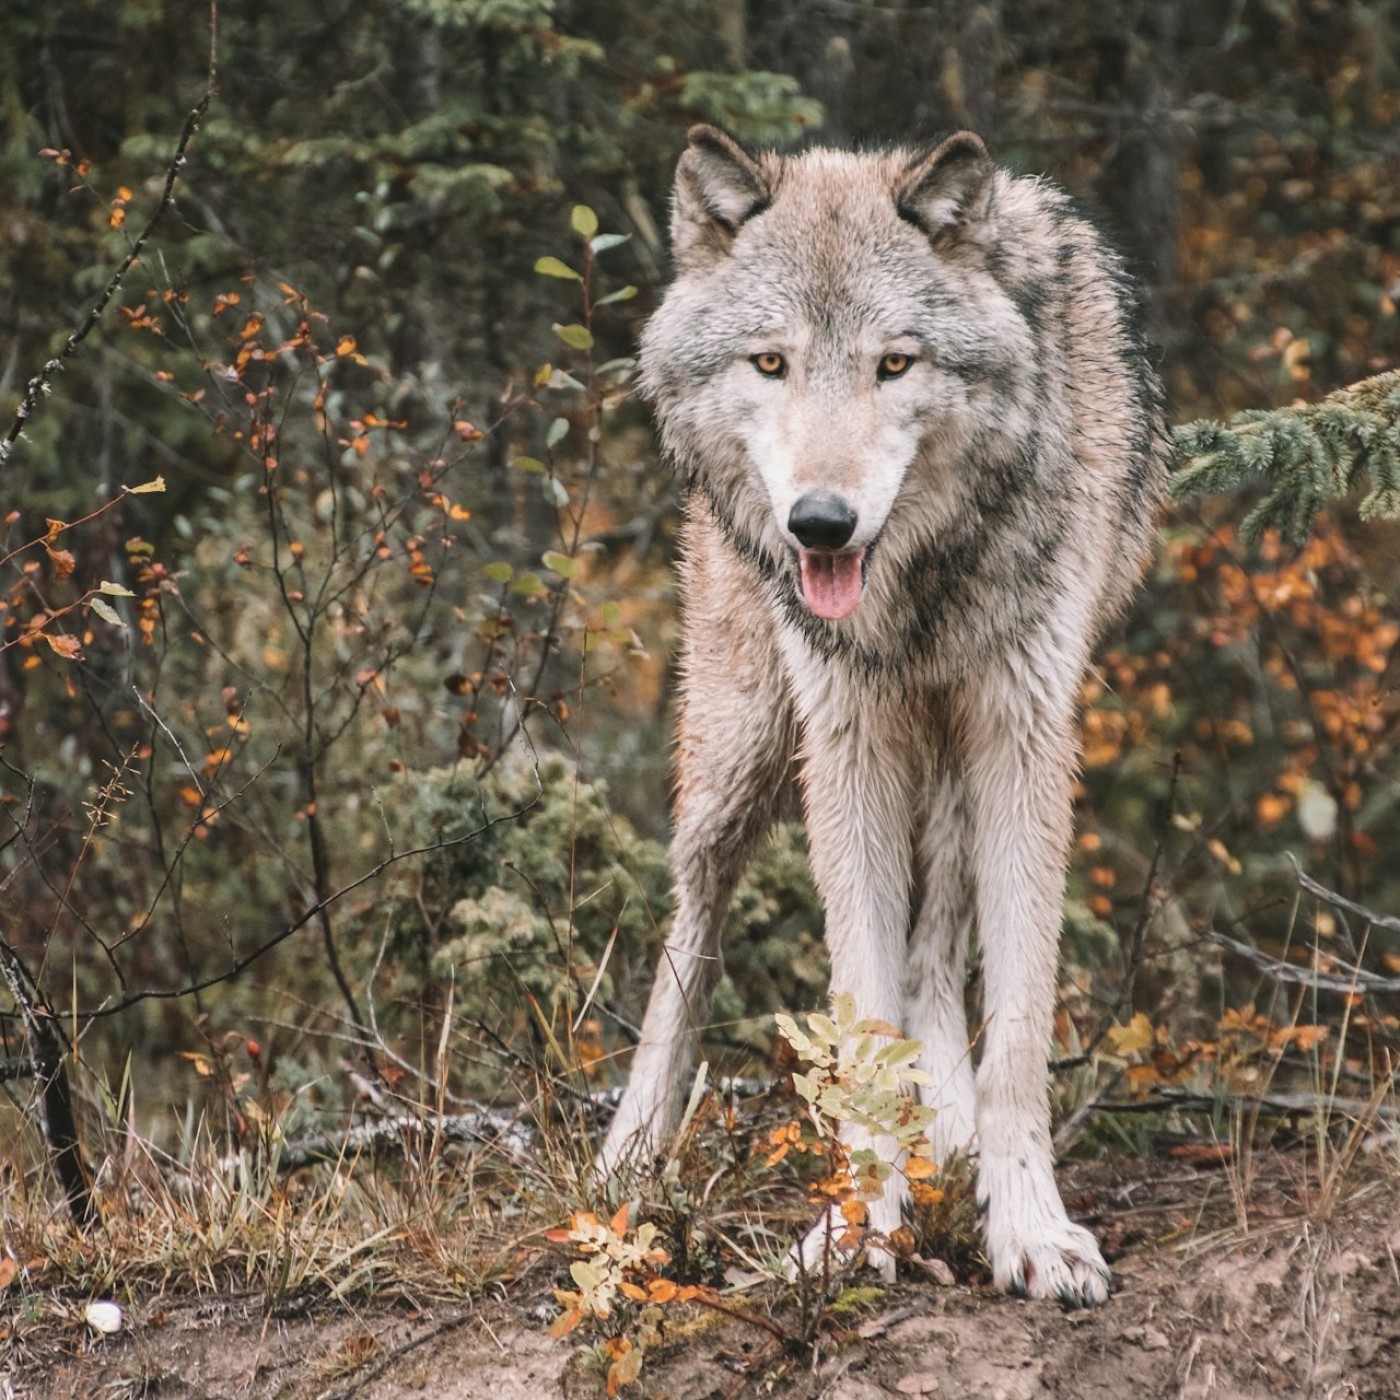 L’autorisation d’abattre les loups à Canjuers remise en question devant le tribunal administratif